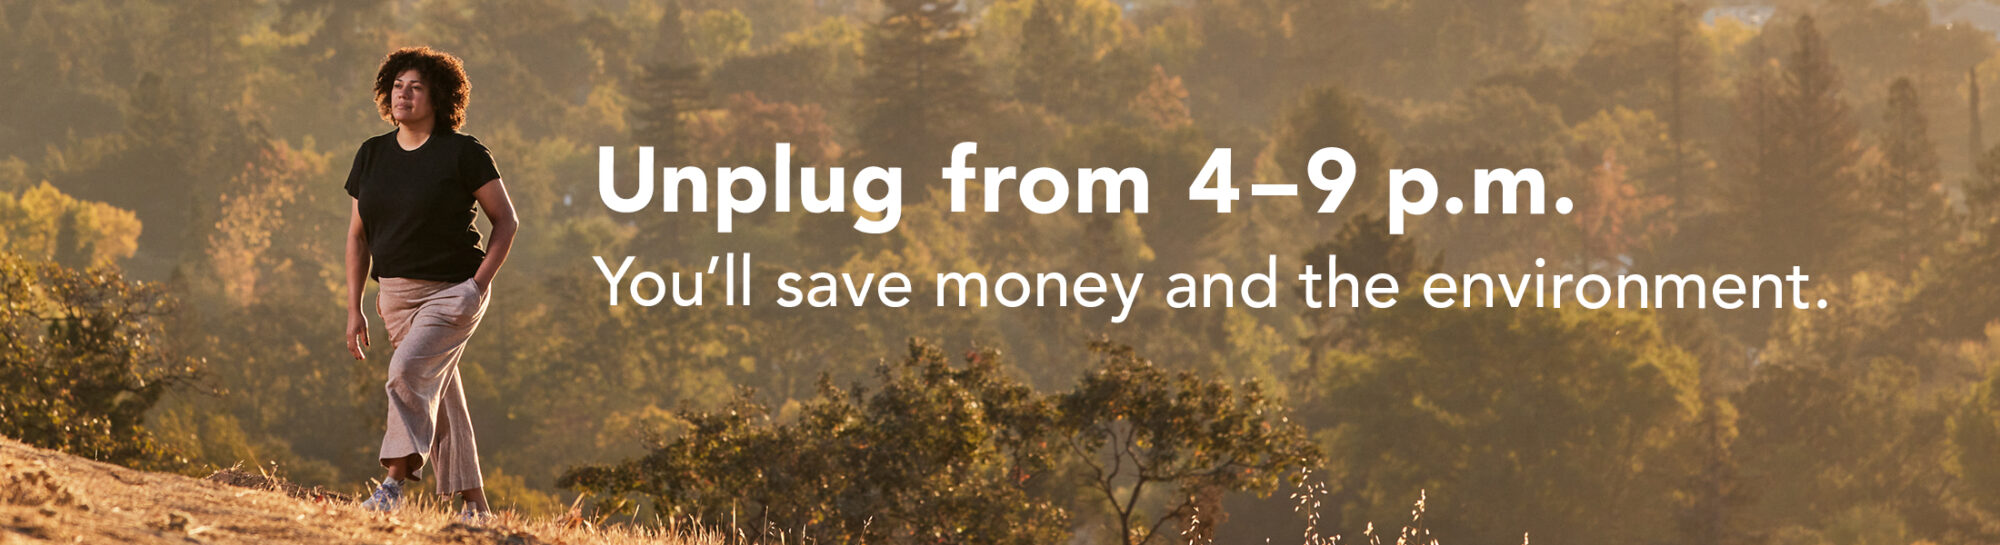 Desconéctate de 4 a 9 p. m. para ahorrar dinero y proteger el medio ambiente